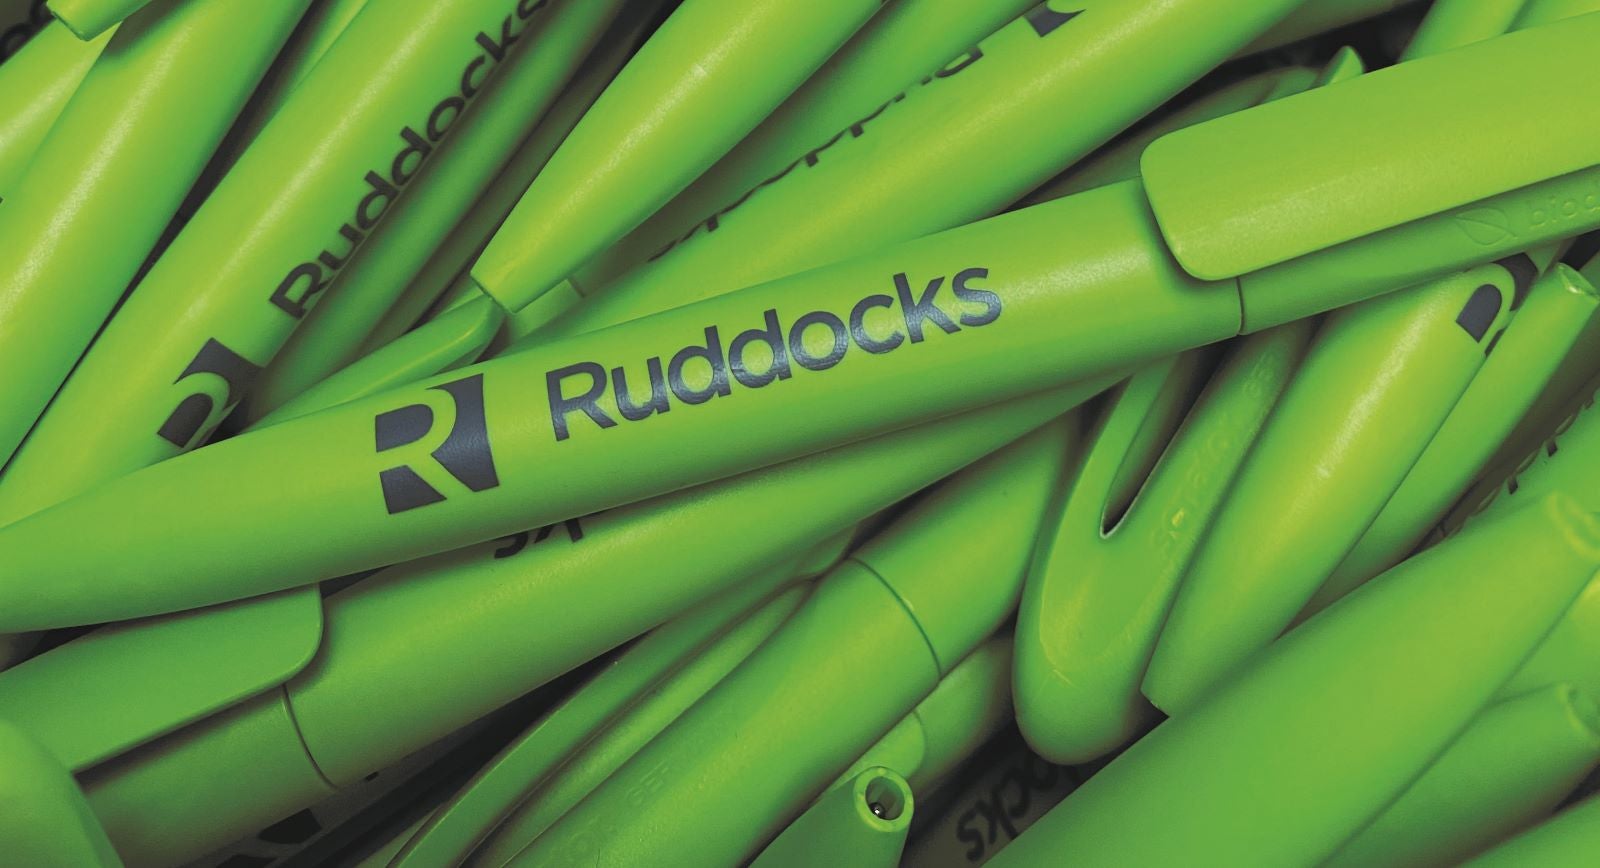 Plastic free pens Ruddocks